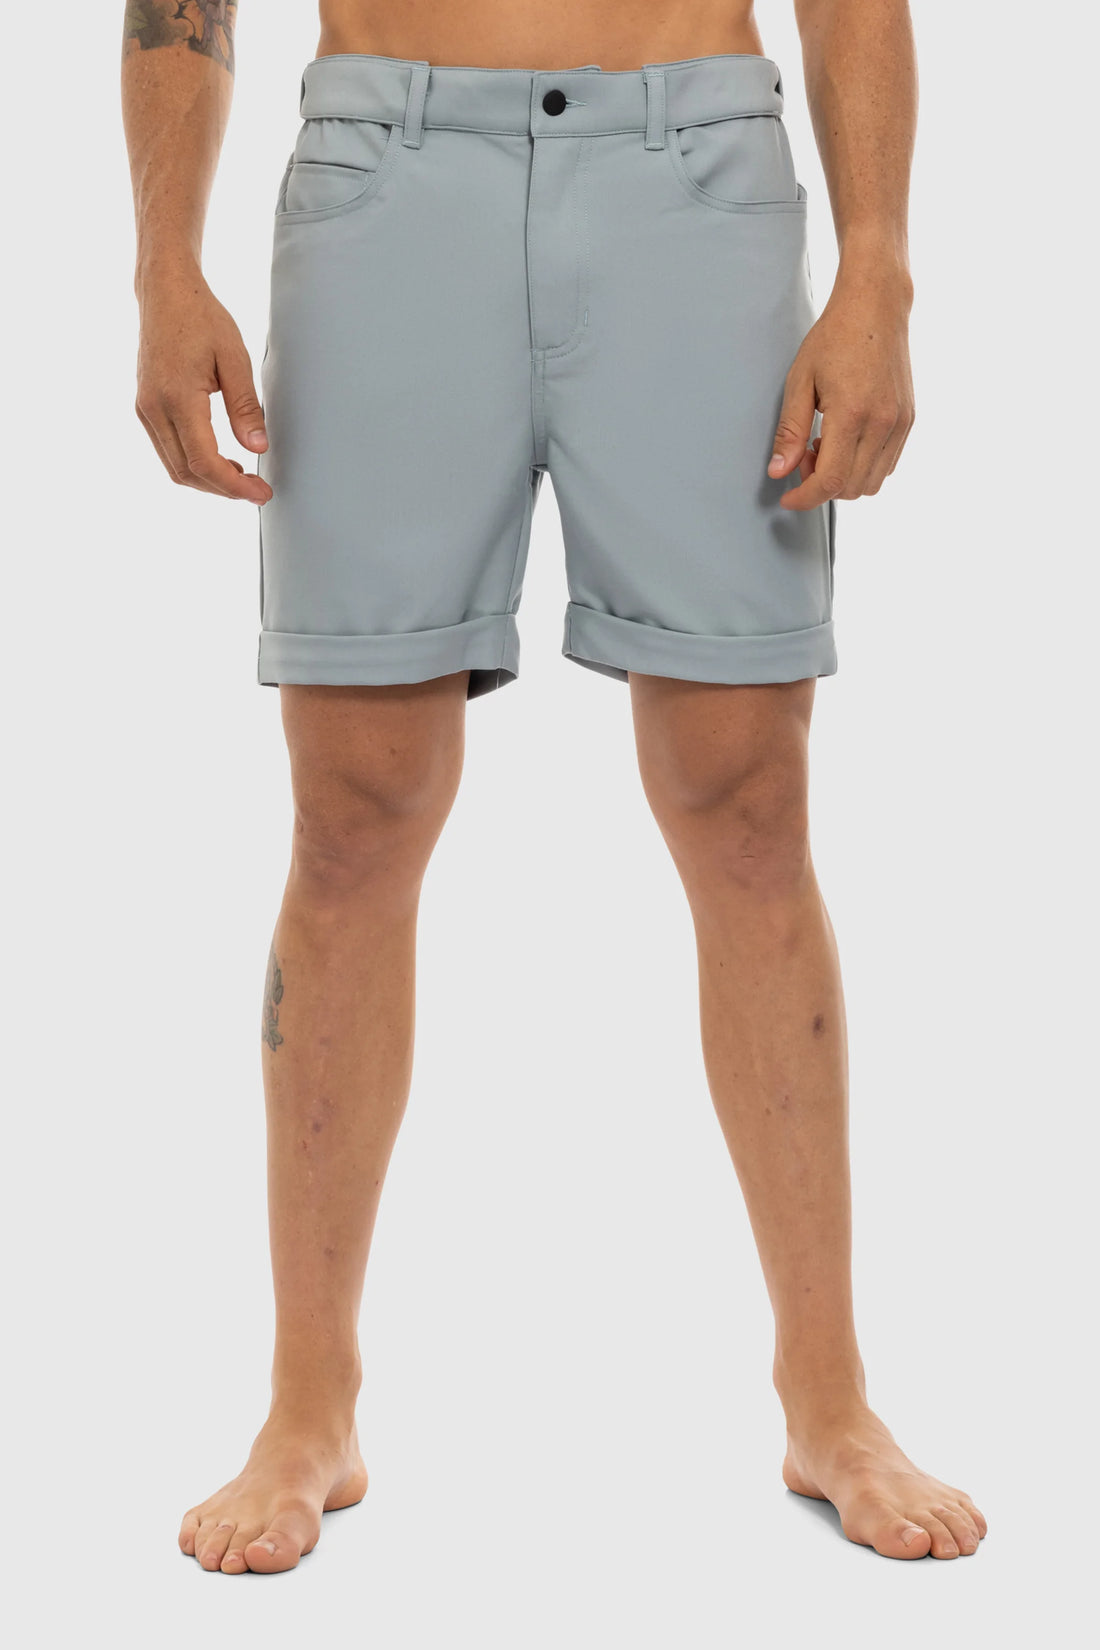 Vital Shorts